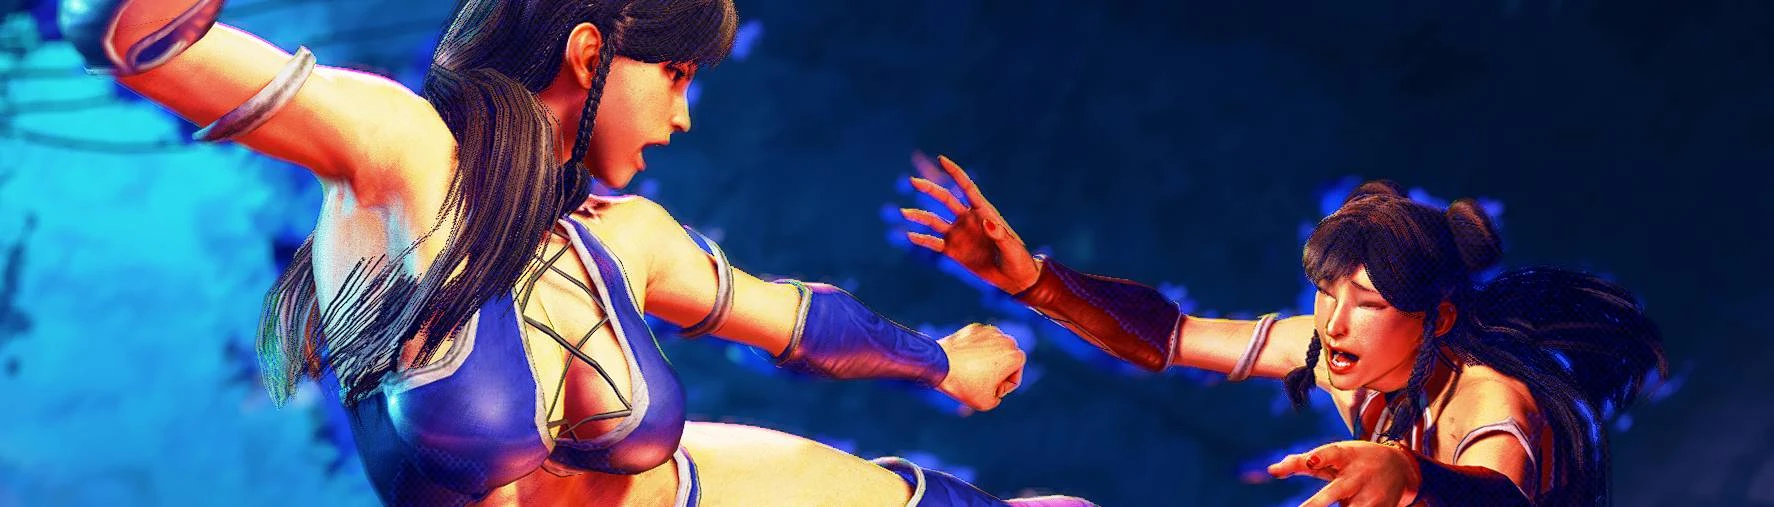 Juri, Street Fighter vs. Mortal Kombat Wiki